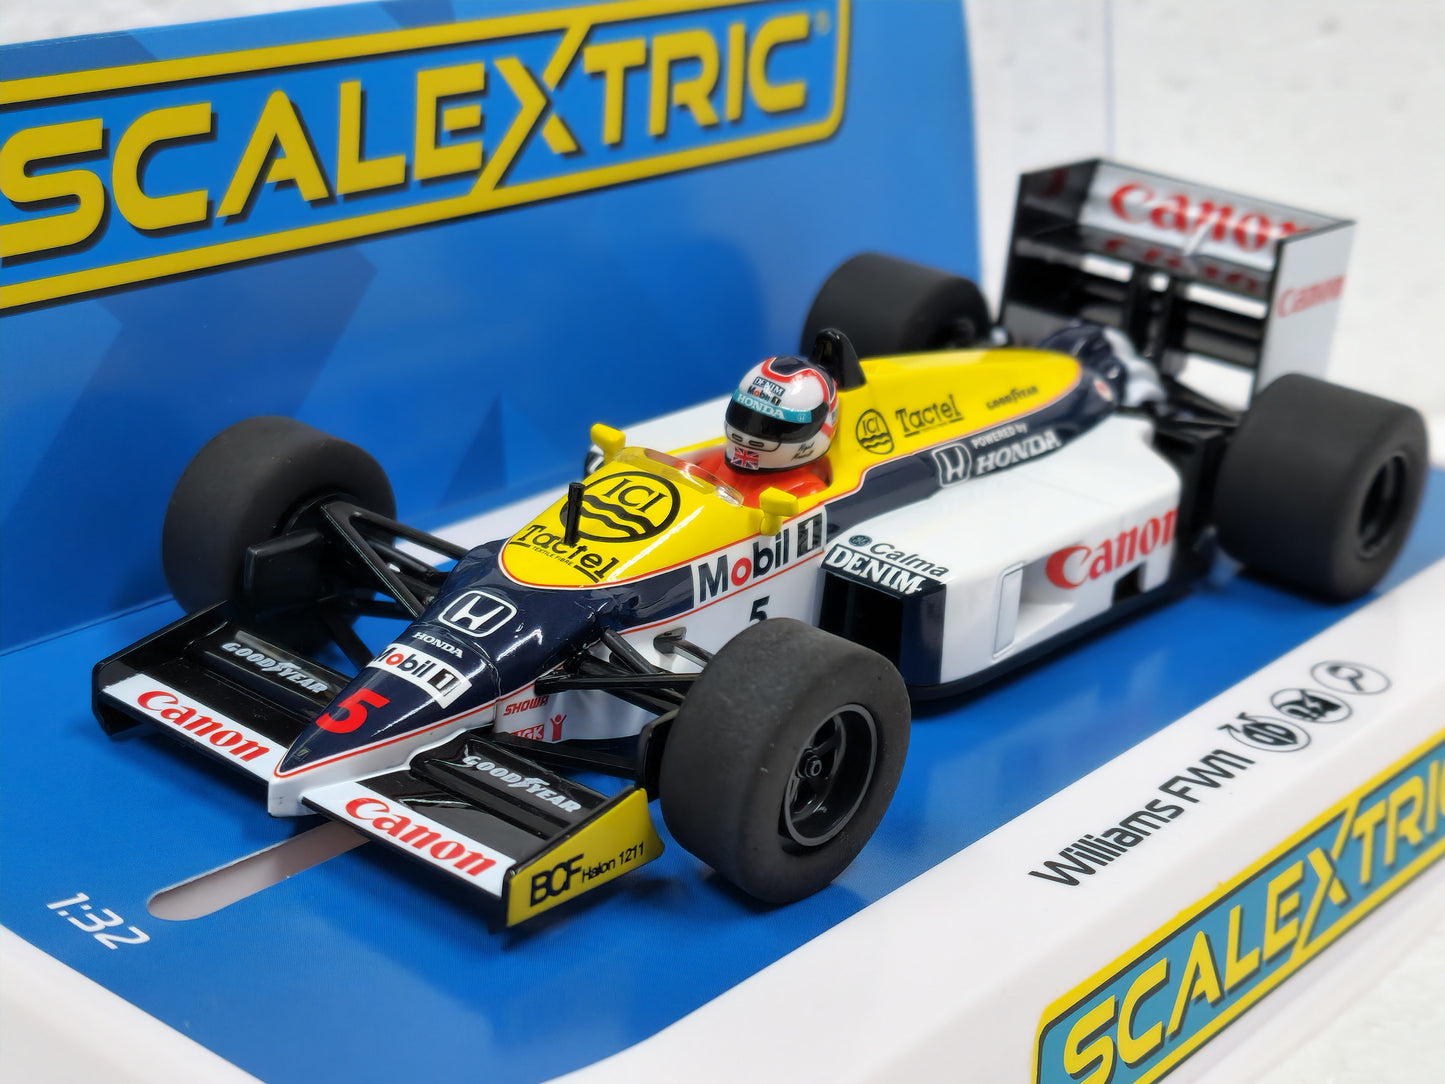 C4318 - Williams FW11 1986 'British Grand Prix'